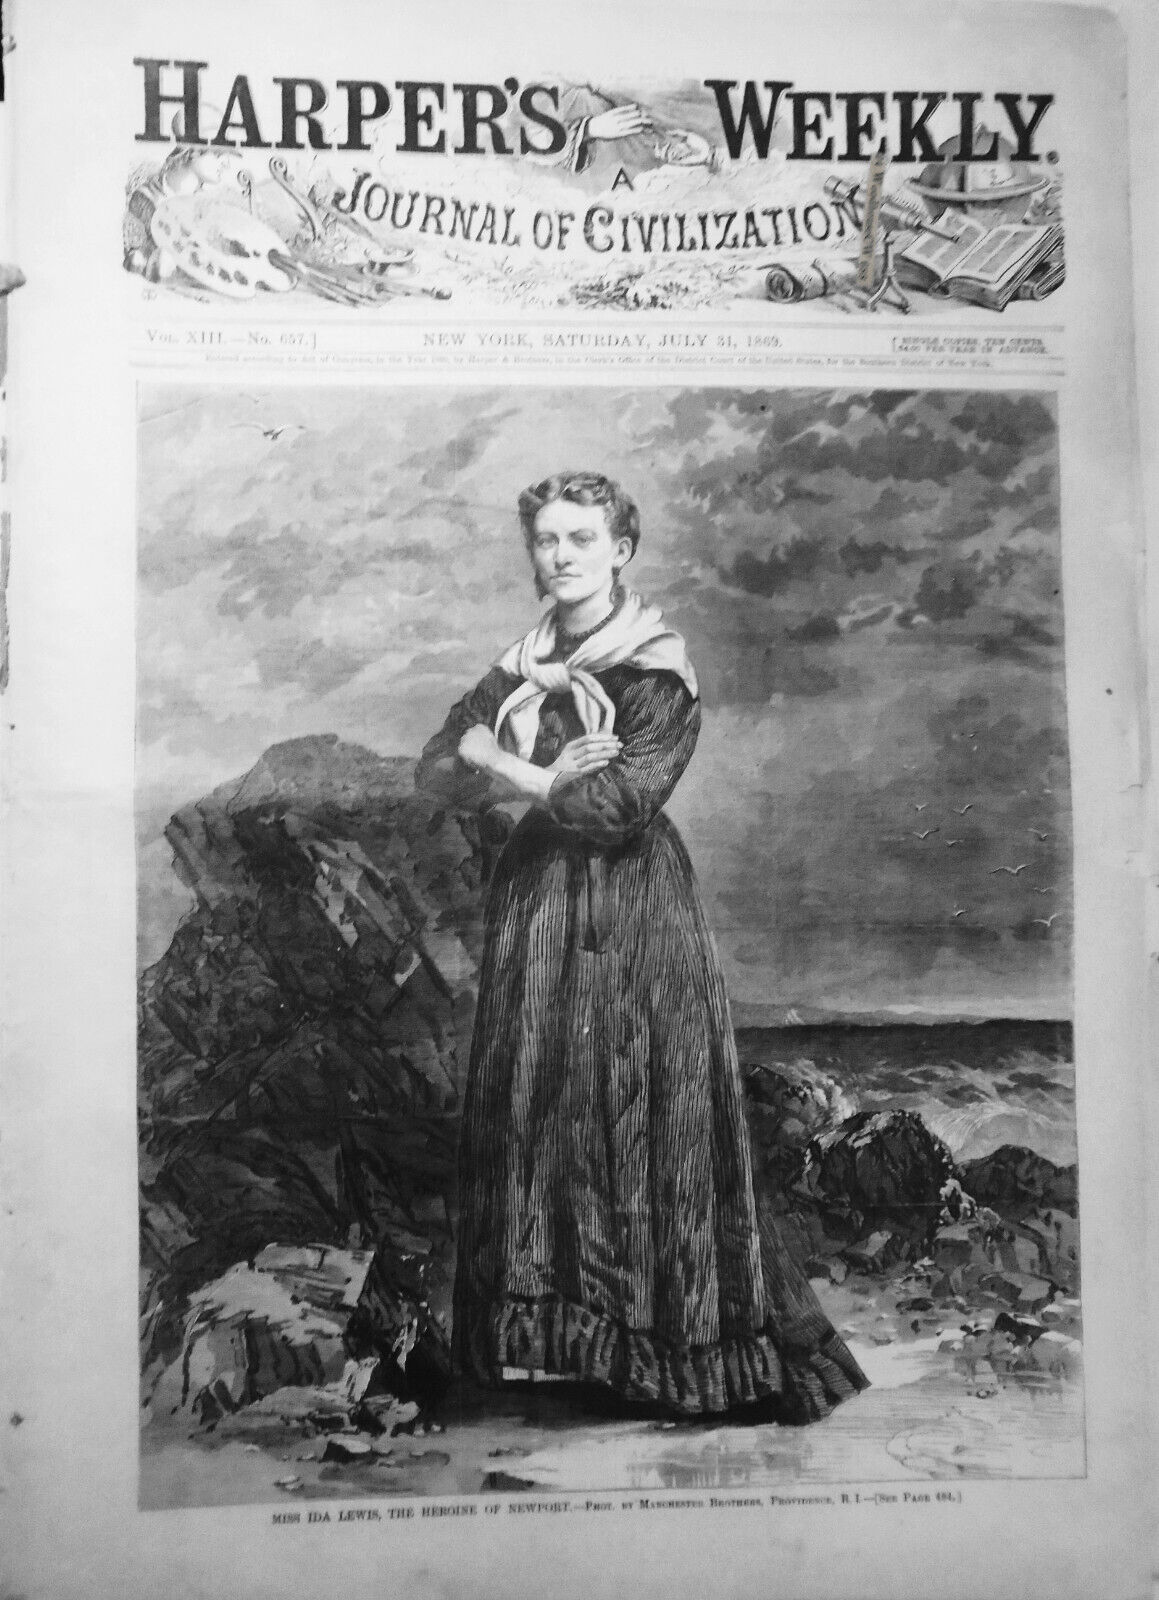 Harper's Weekly July 31, 1869: Ida Lewis, Newport, RI heroine; Camp meeting etc